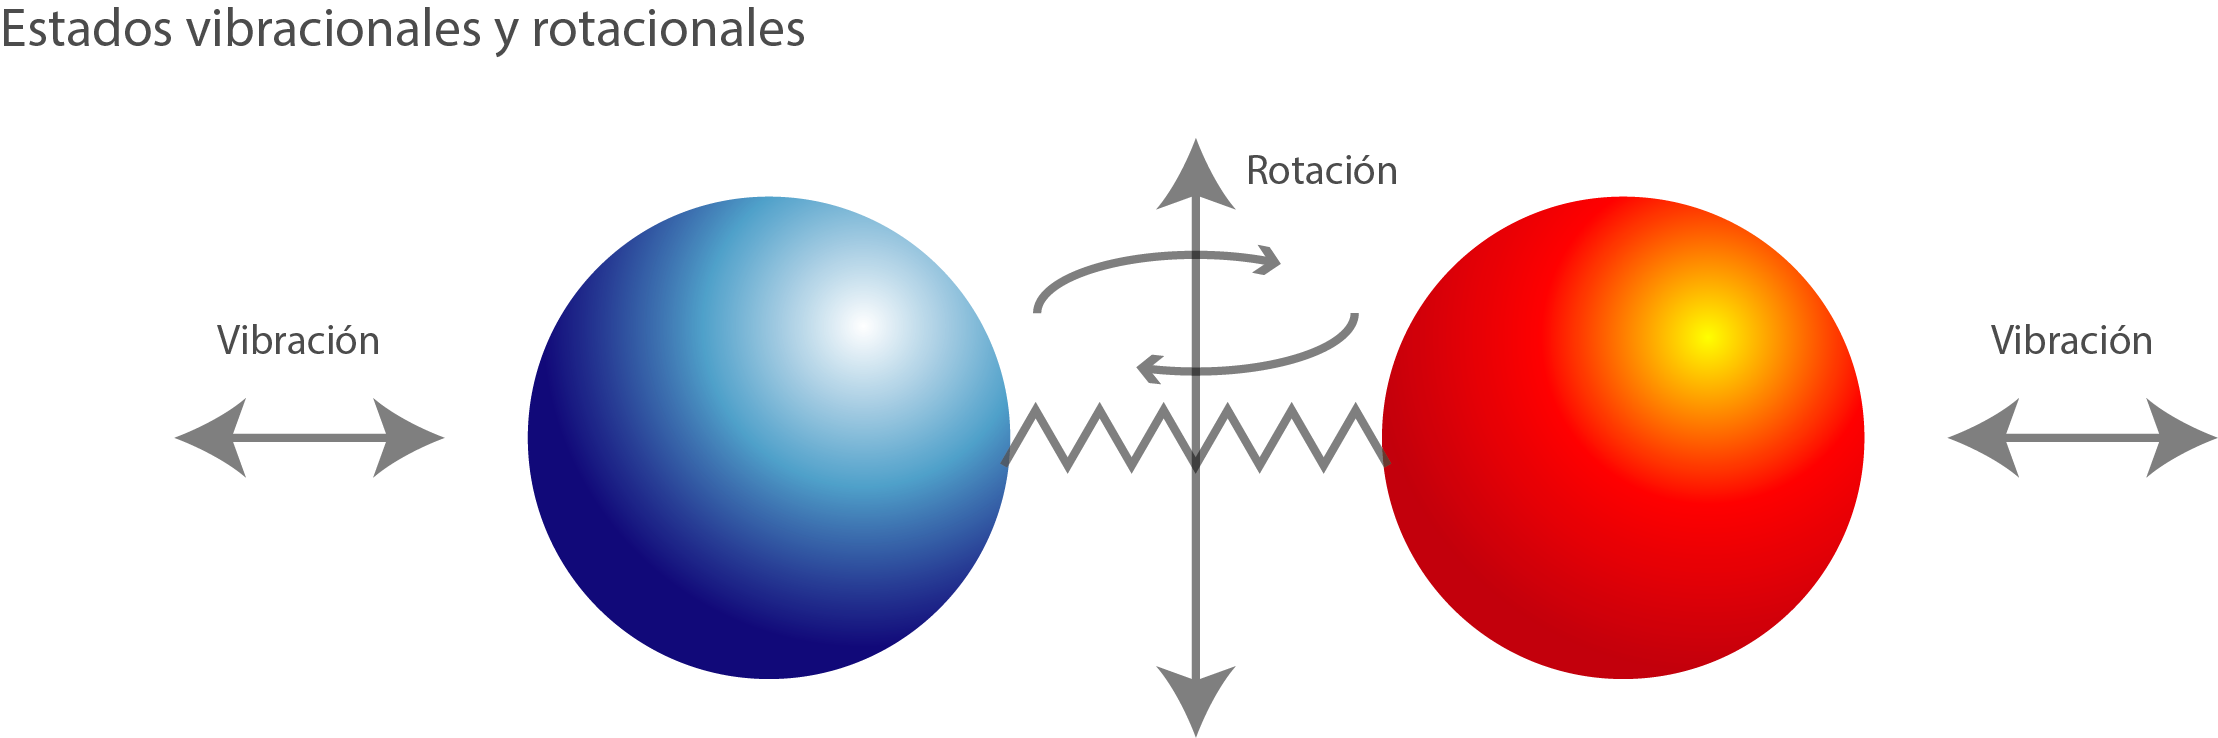 Estado de vibración y rotación de átomos y/o moléculas 